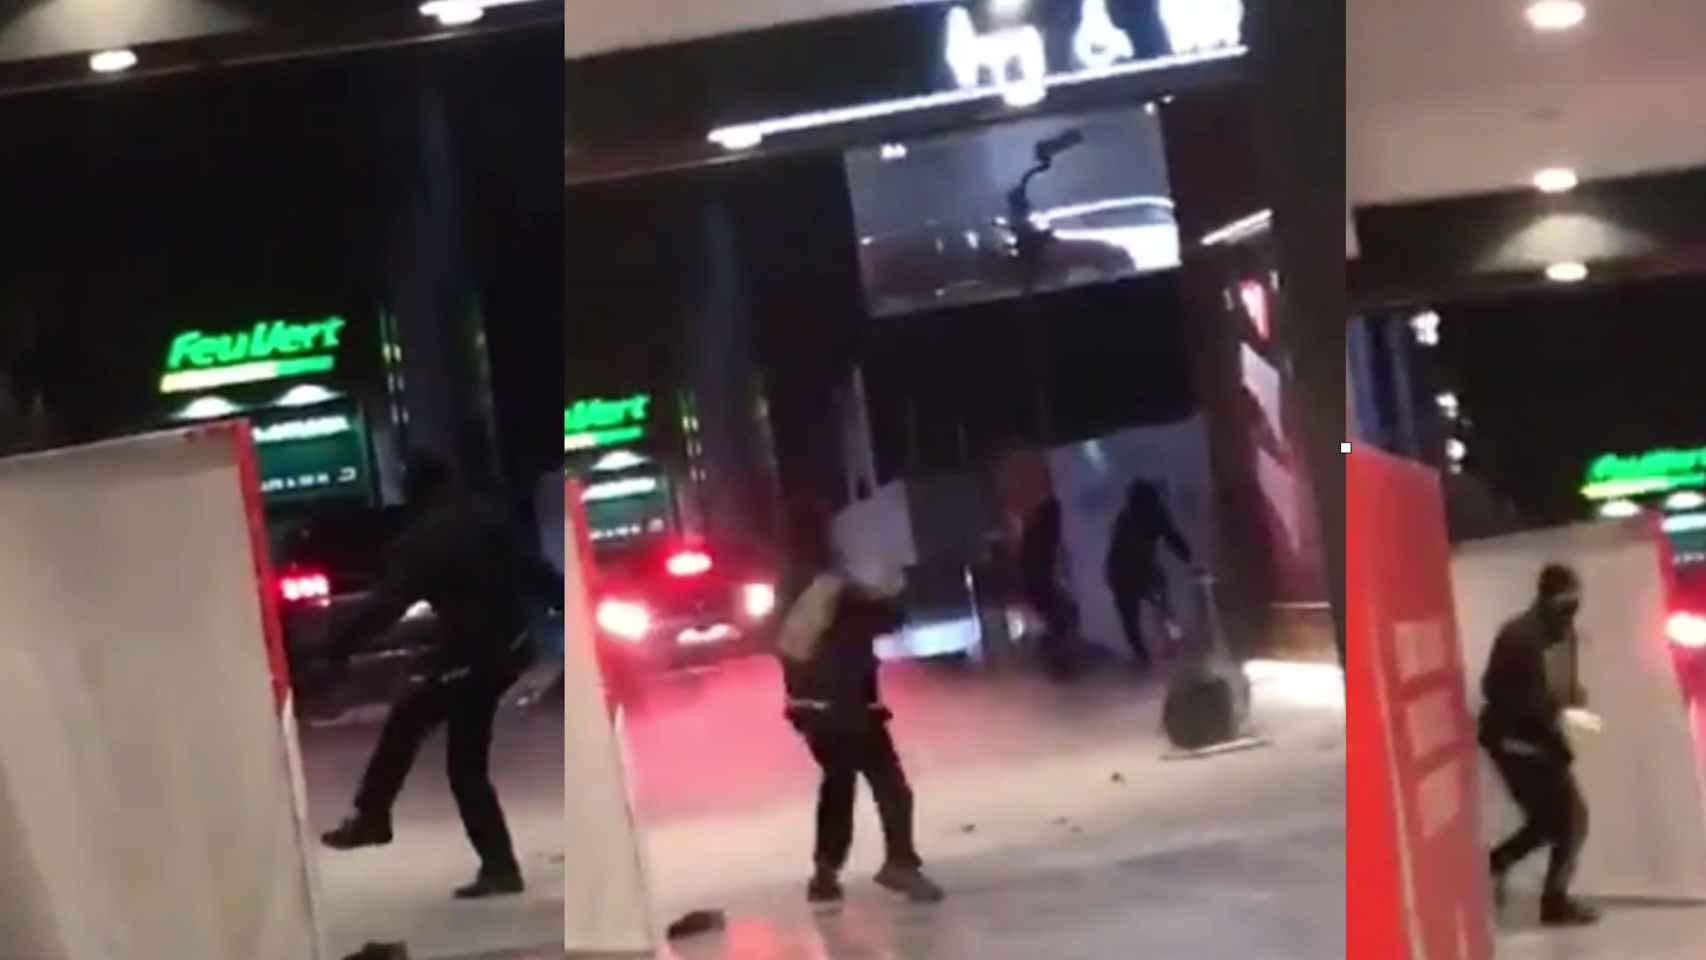 Fotogramas del asalto en un centro comercial de Barcelona para robar un cajero / CG